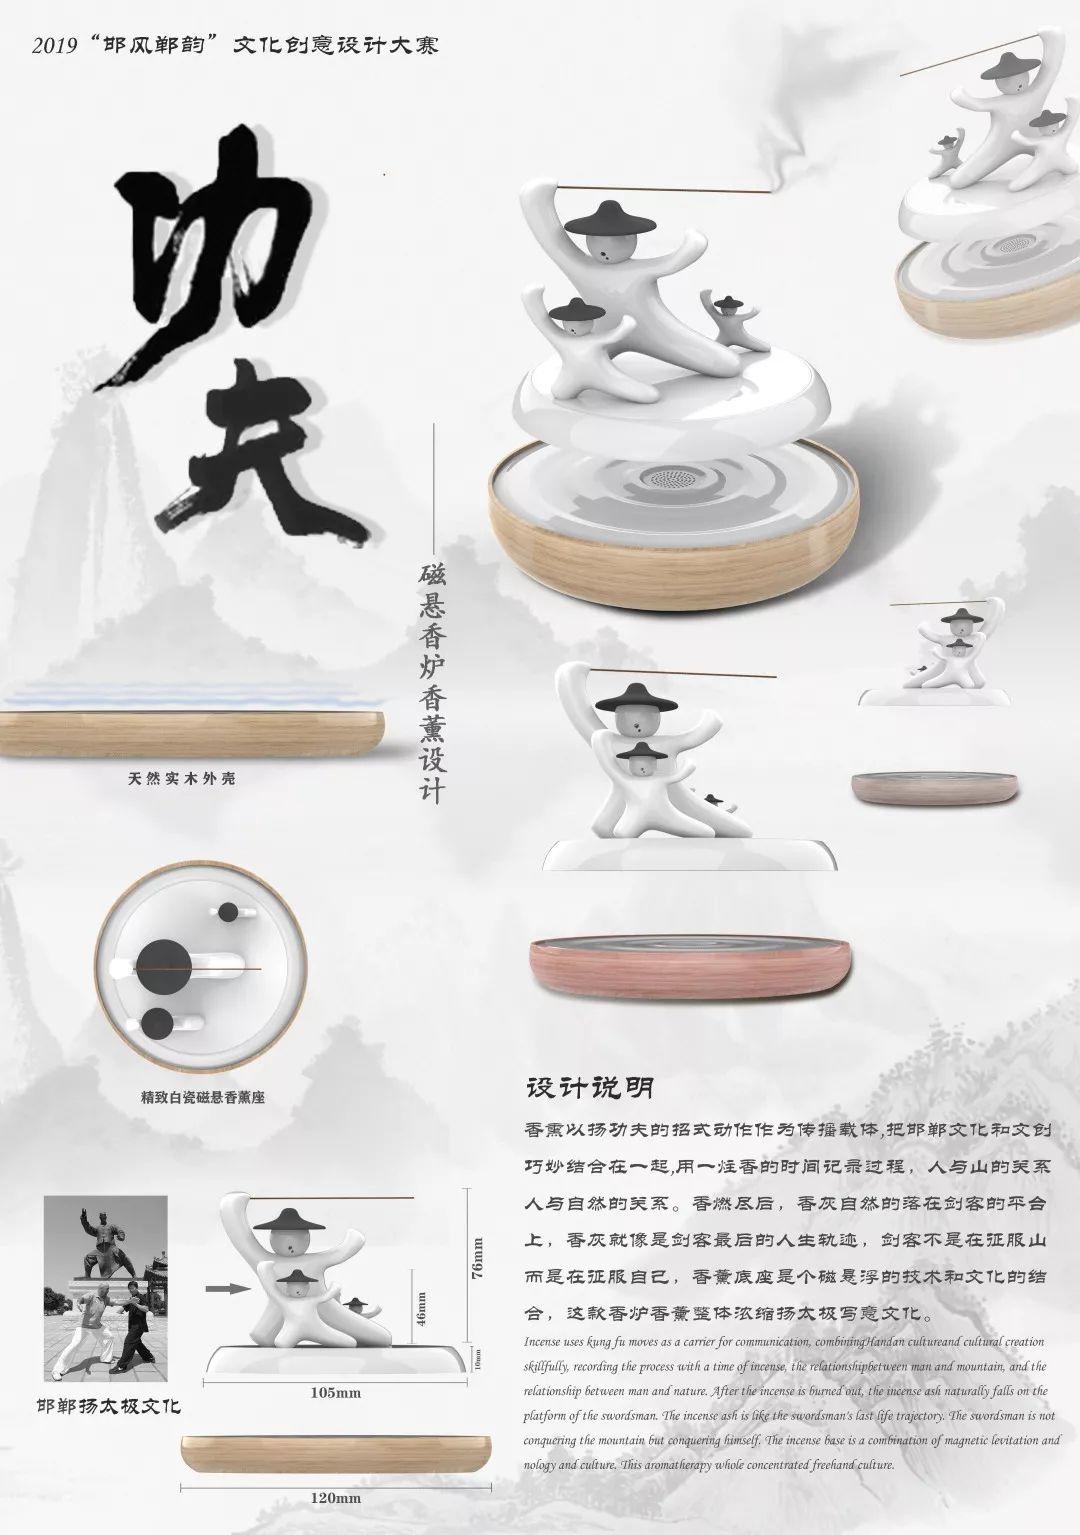 2019邯风郸韵文化创意设计大赛总决赛获奖作品公示